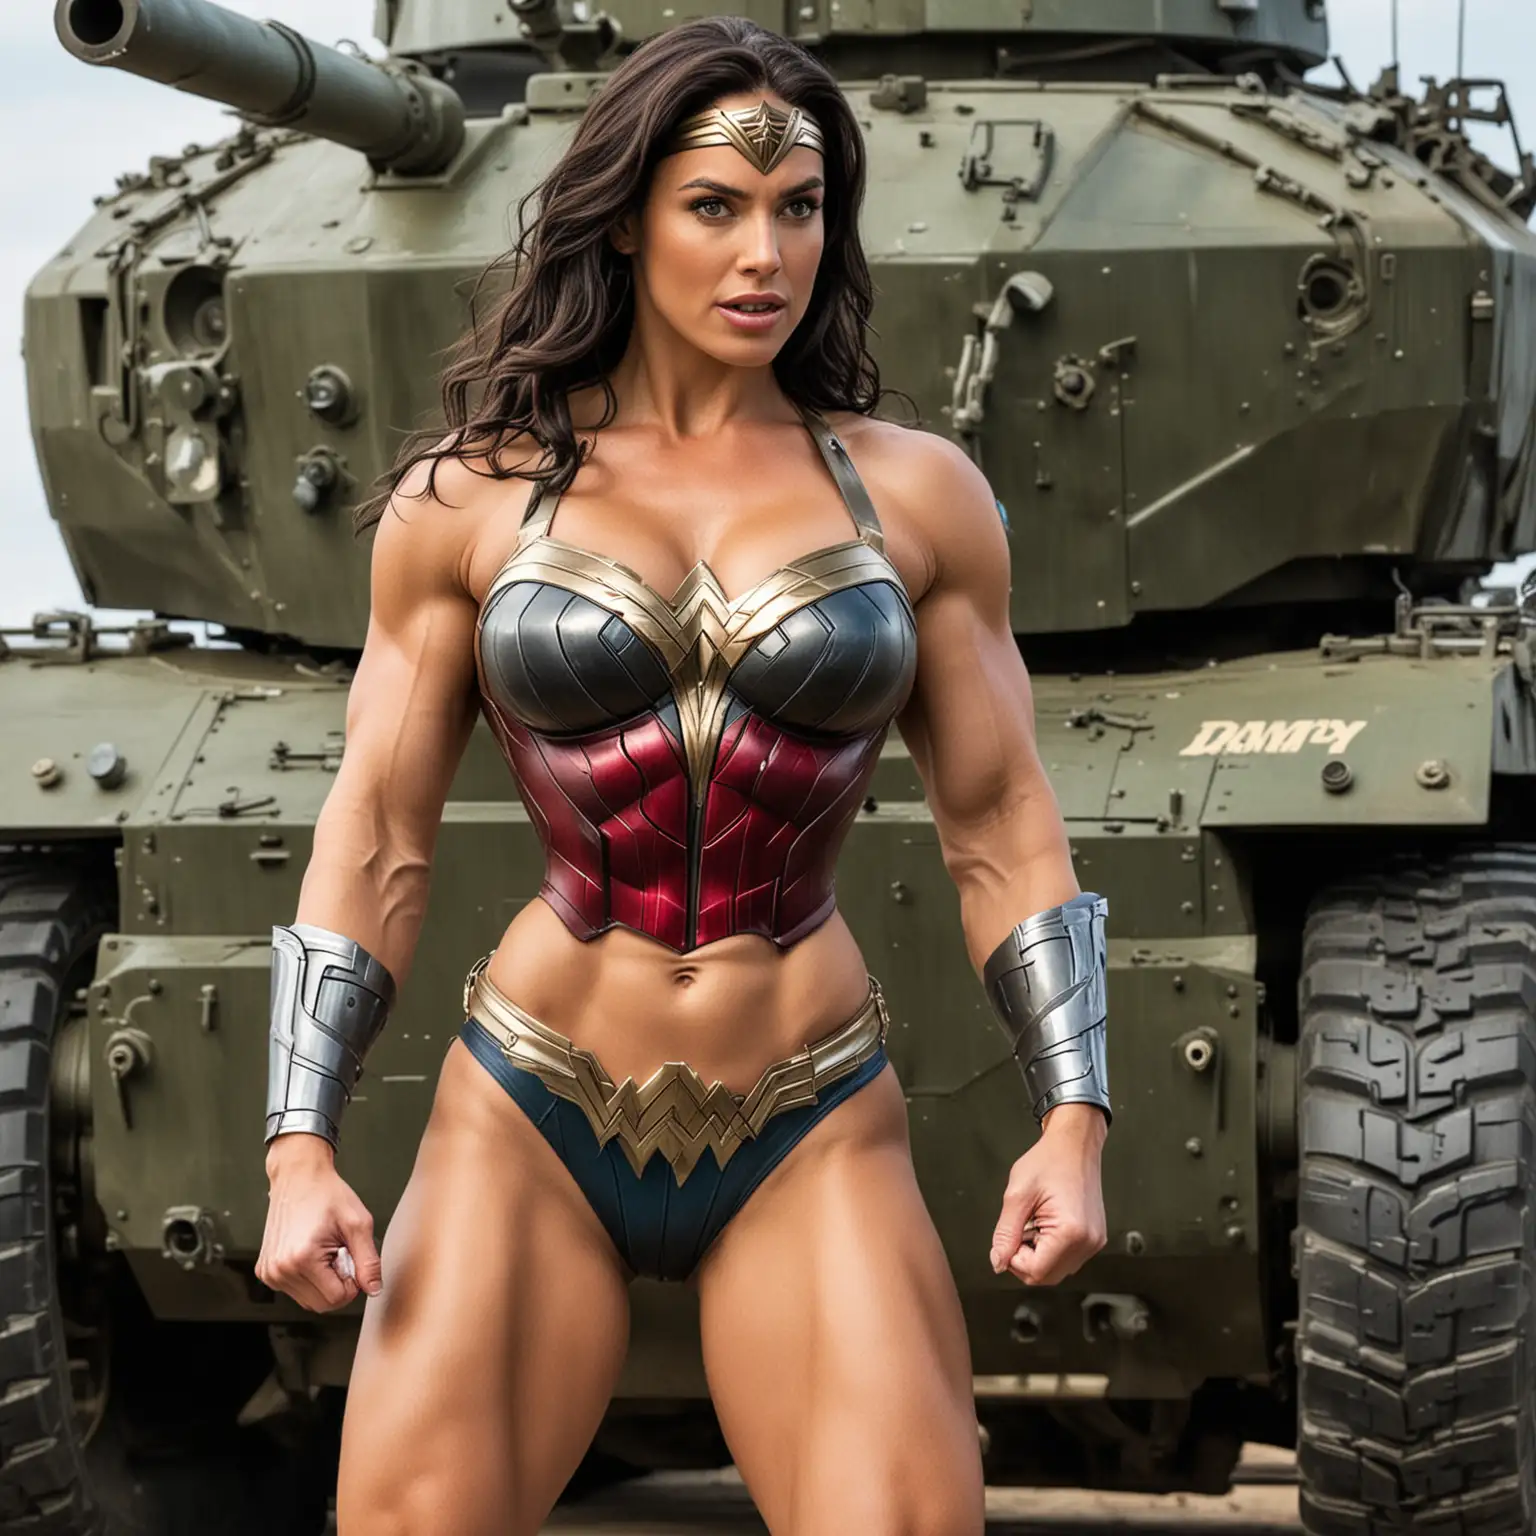 Muscular Wonder Woman in Bikini Lifting Army Tank